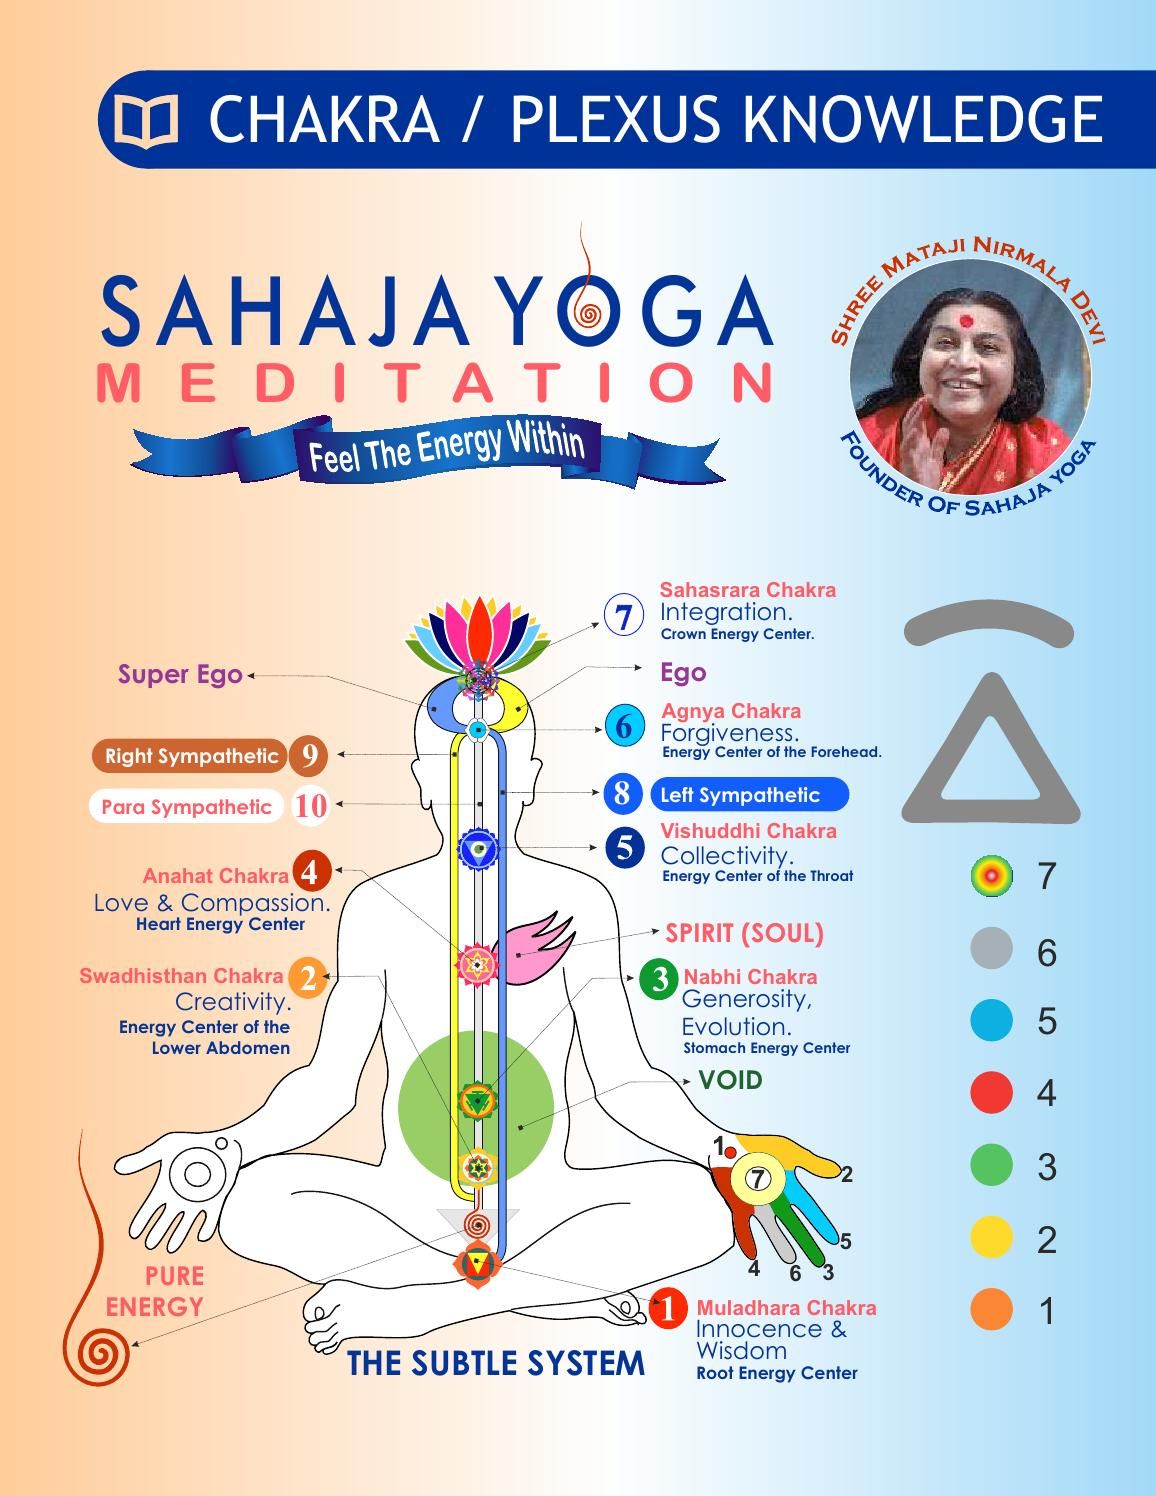 Сахаджа йога: что это такое, лечения болезней